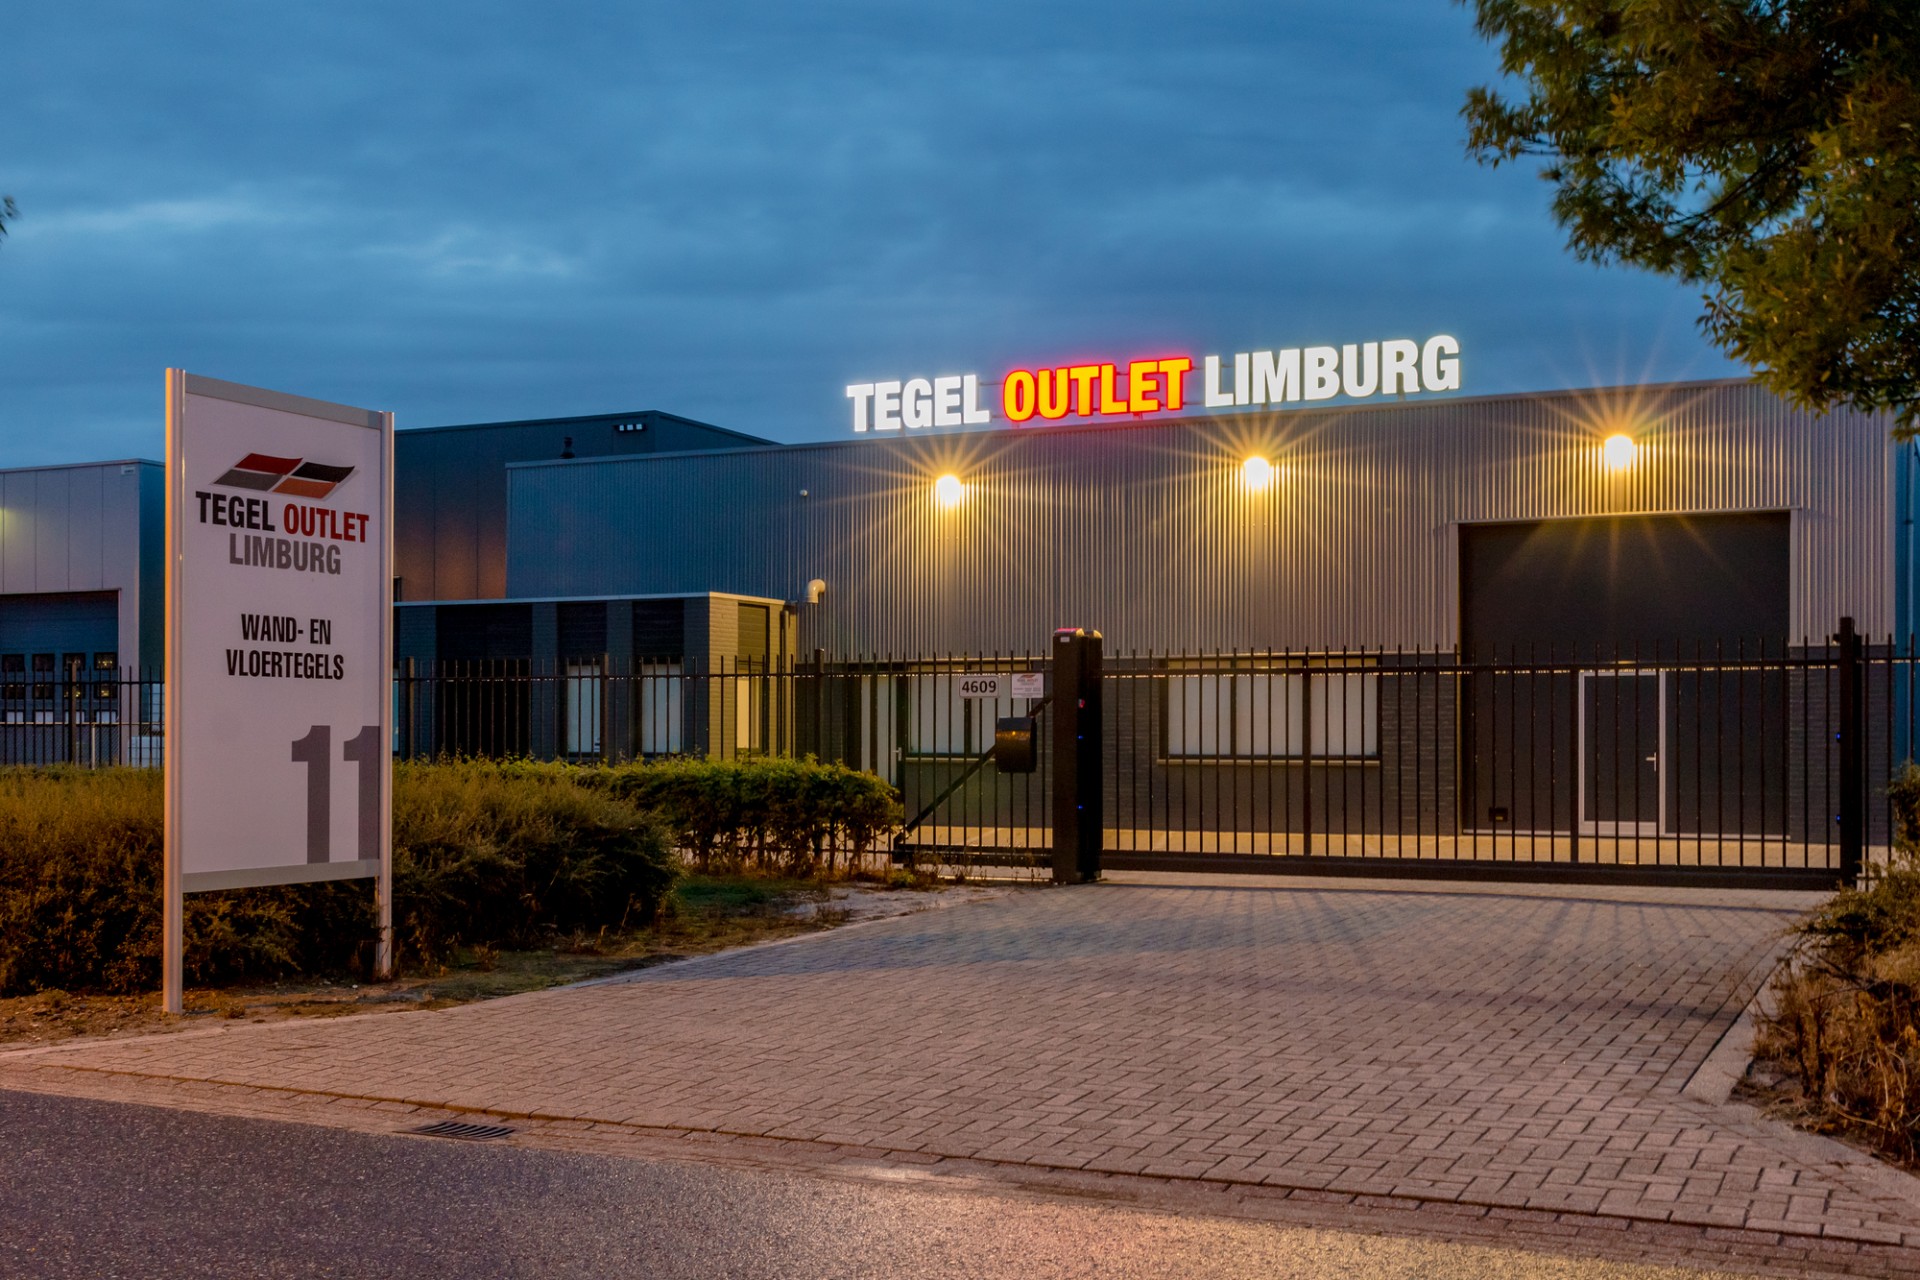 Lichtreclame uitgevoerd in doosletters - Tegel Outlet Limburg, Weert